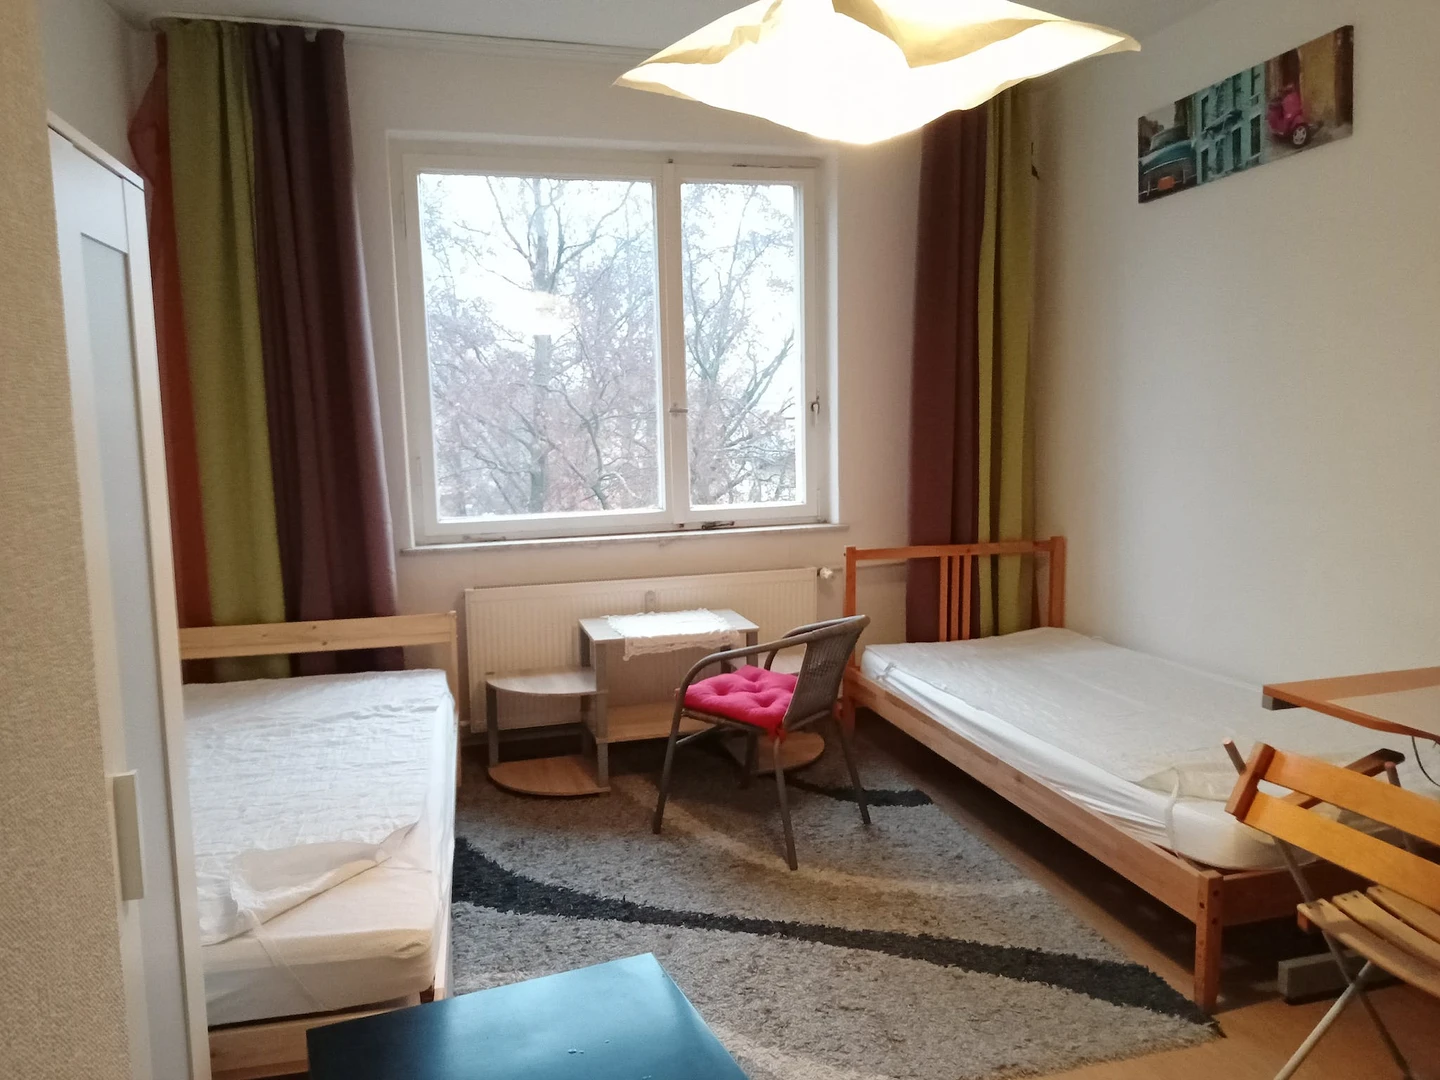 Chambre en colocation dans un appartement de 3 chambres berlin